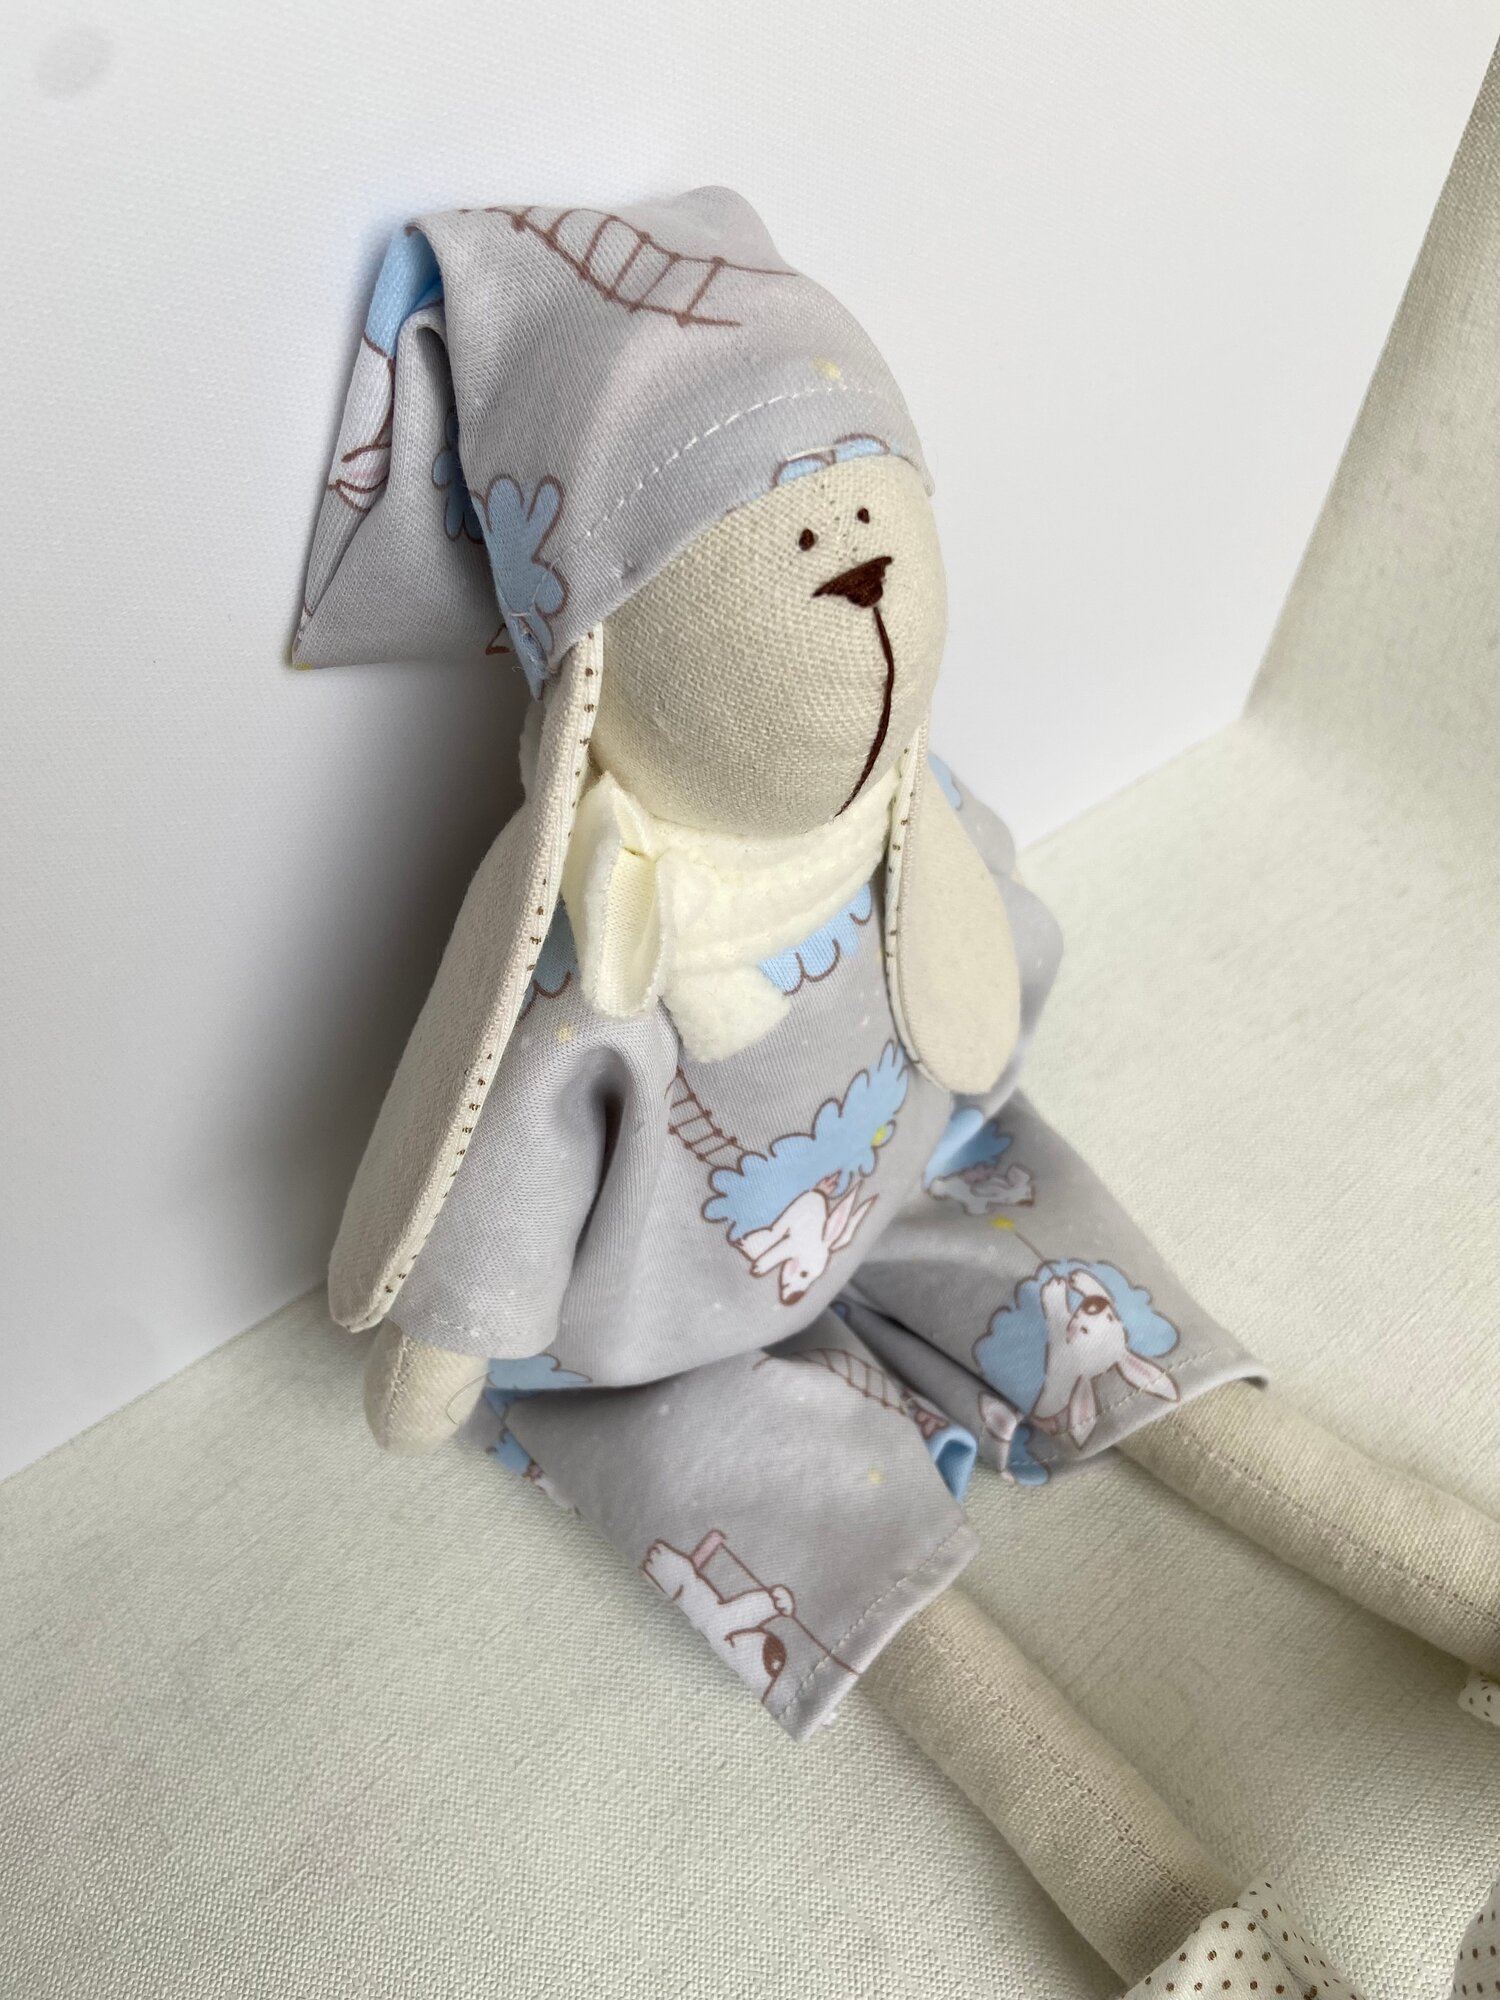 Текстильная мягкая игрушка заяц Тильда в светлосинем комбинезоне белых носках